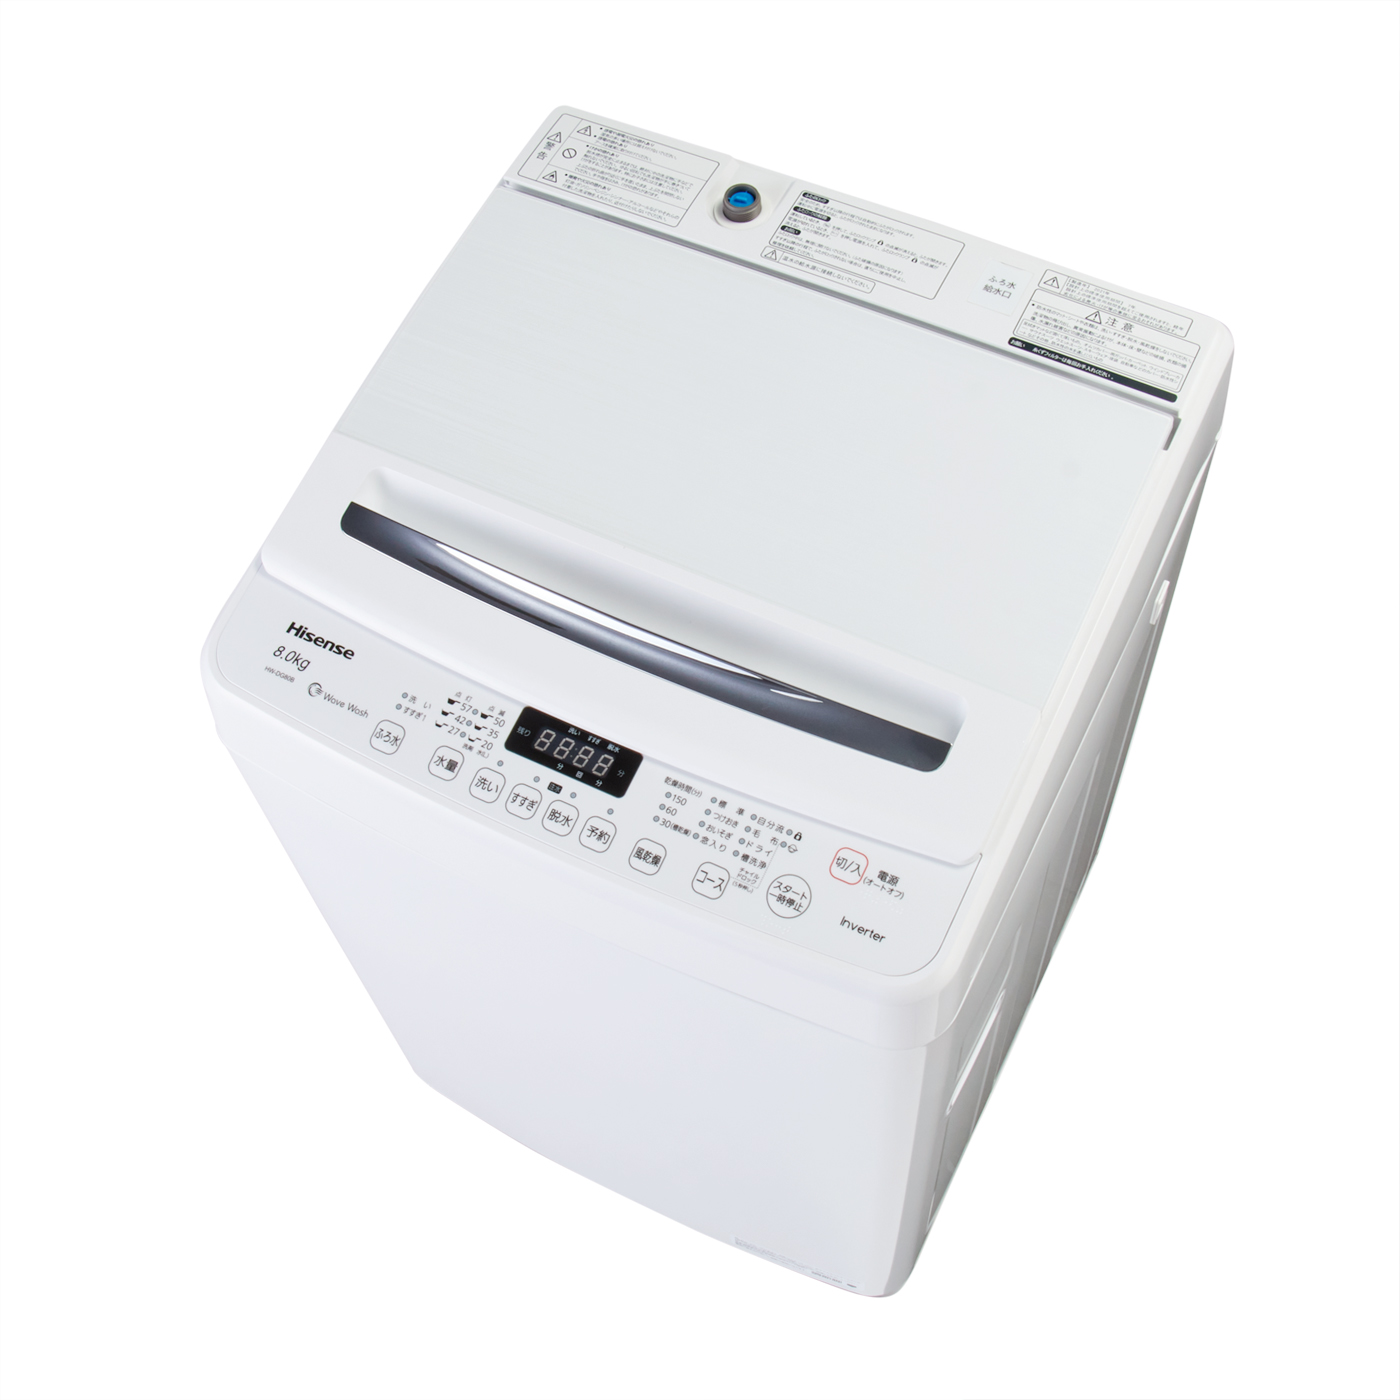 12350円 今だけ限定15%OFFクーポン発行中 Hisense 洗濯機 8kg